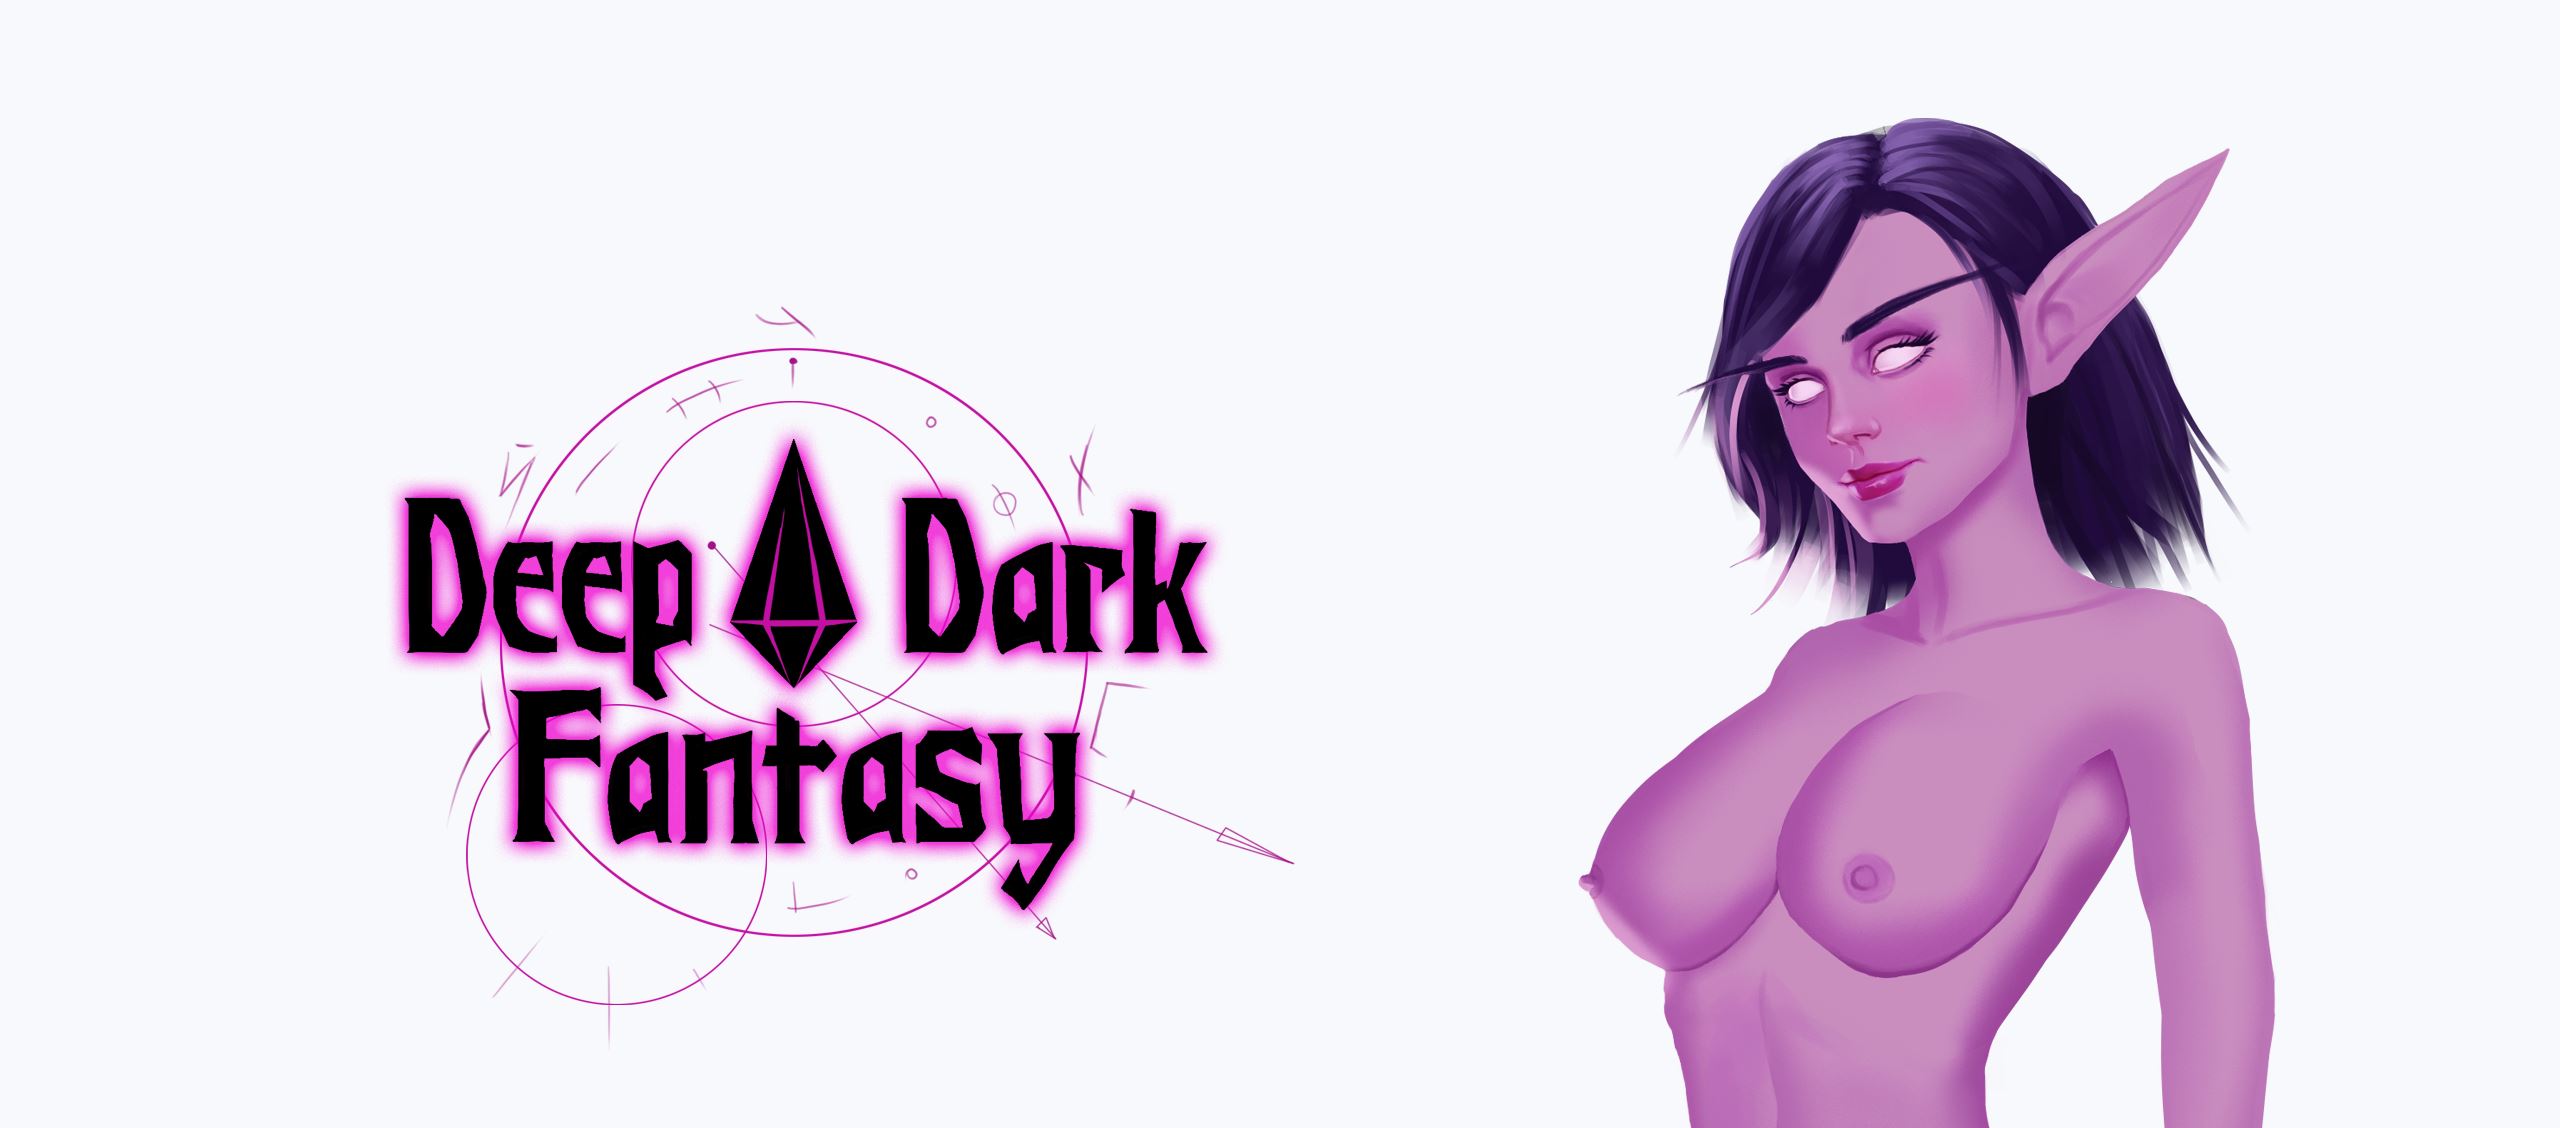 Deep Dark Fantasy Others Porn Sex Game v.0.1 Download for Windows